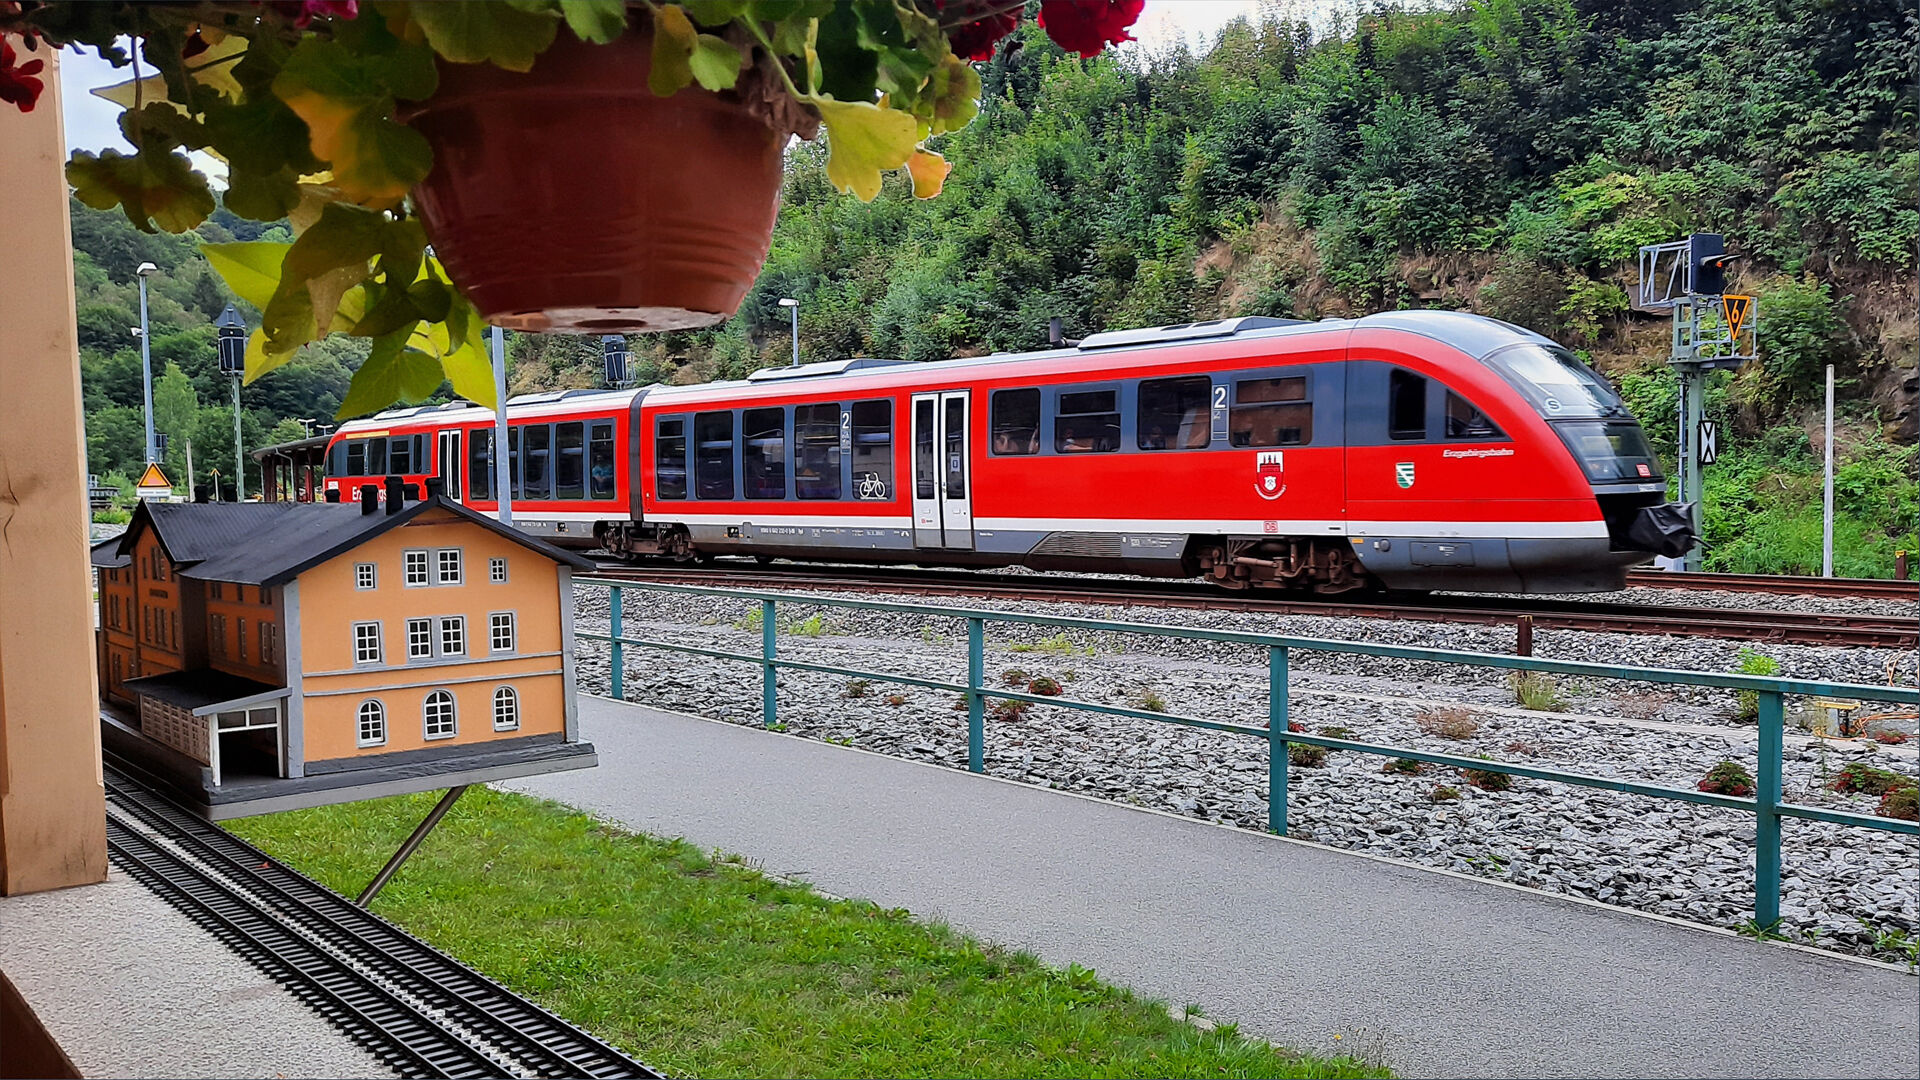 Zug der Erzgebirgsbahn im Bahnhof Wolkenstein 
© Wolfgang Fischer